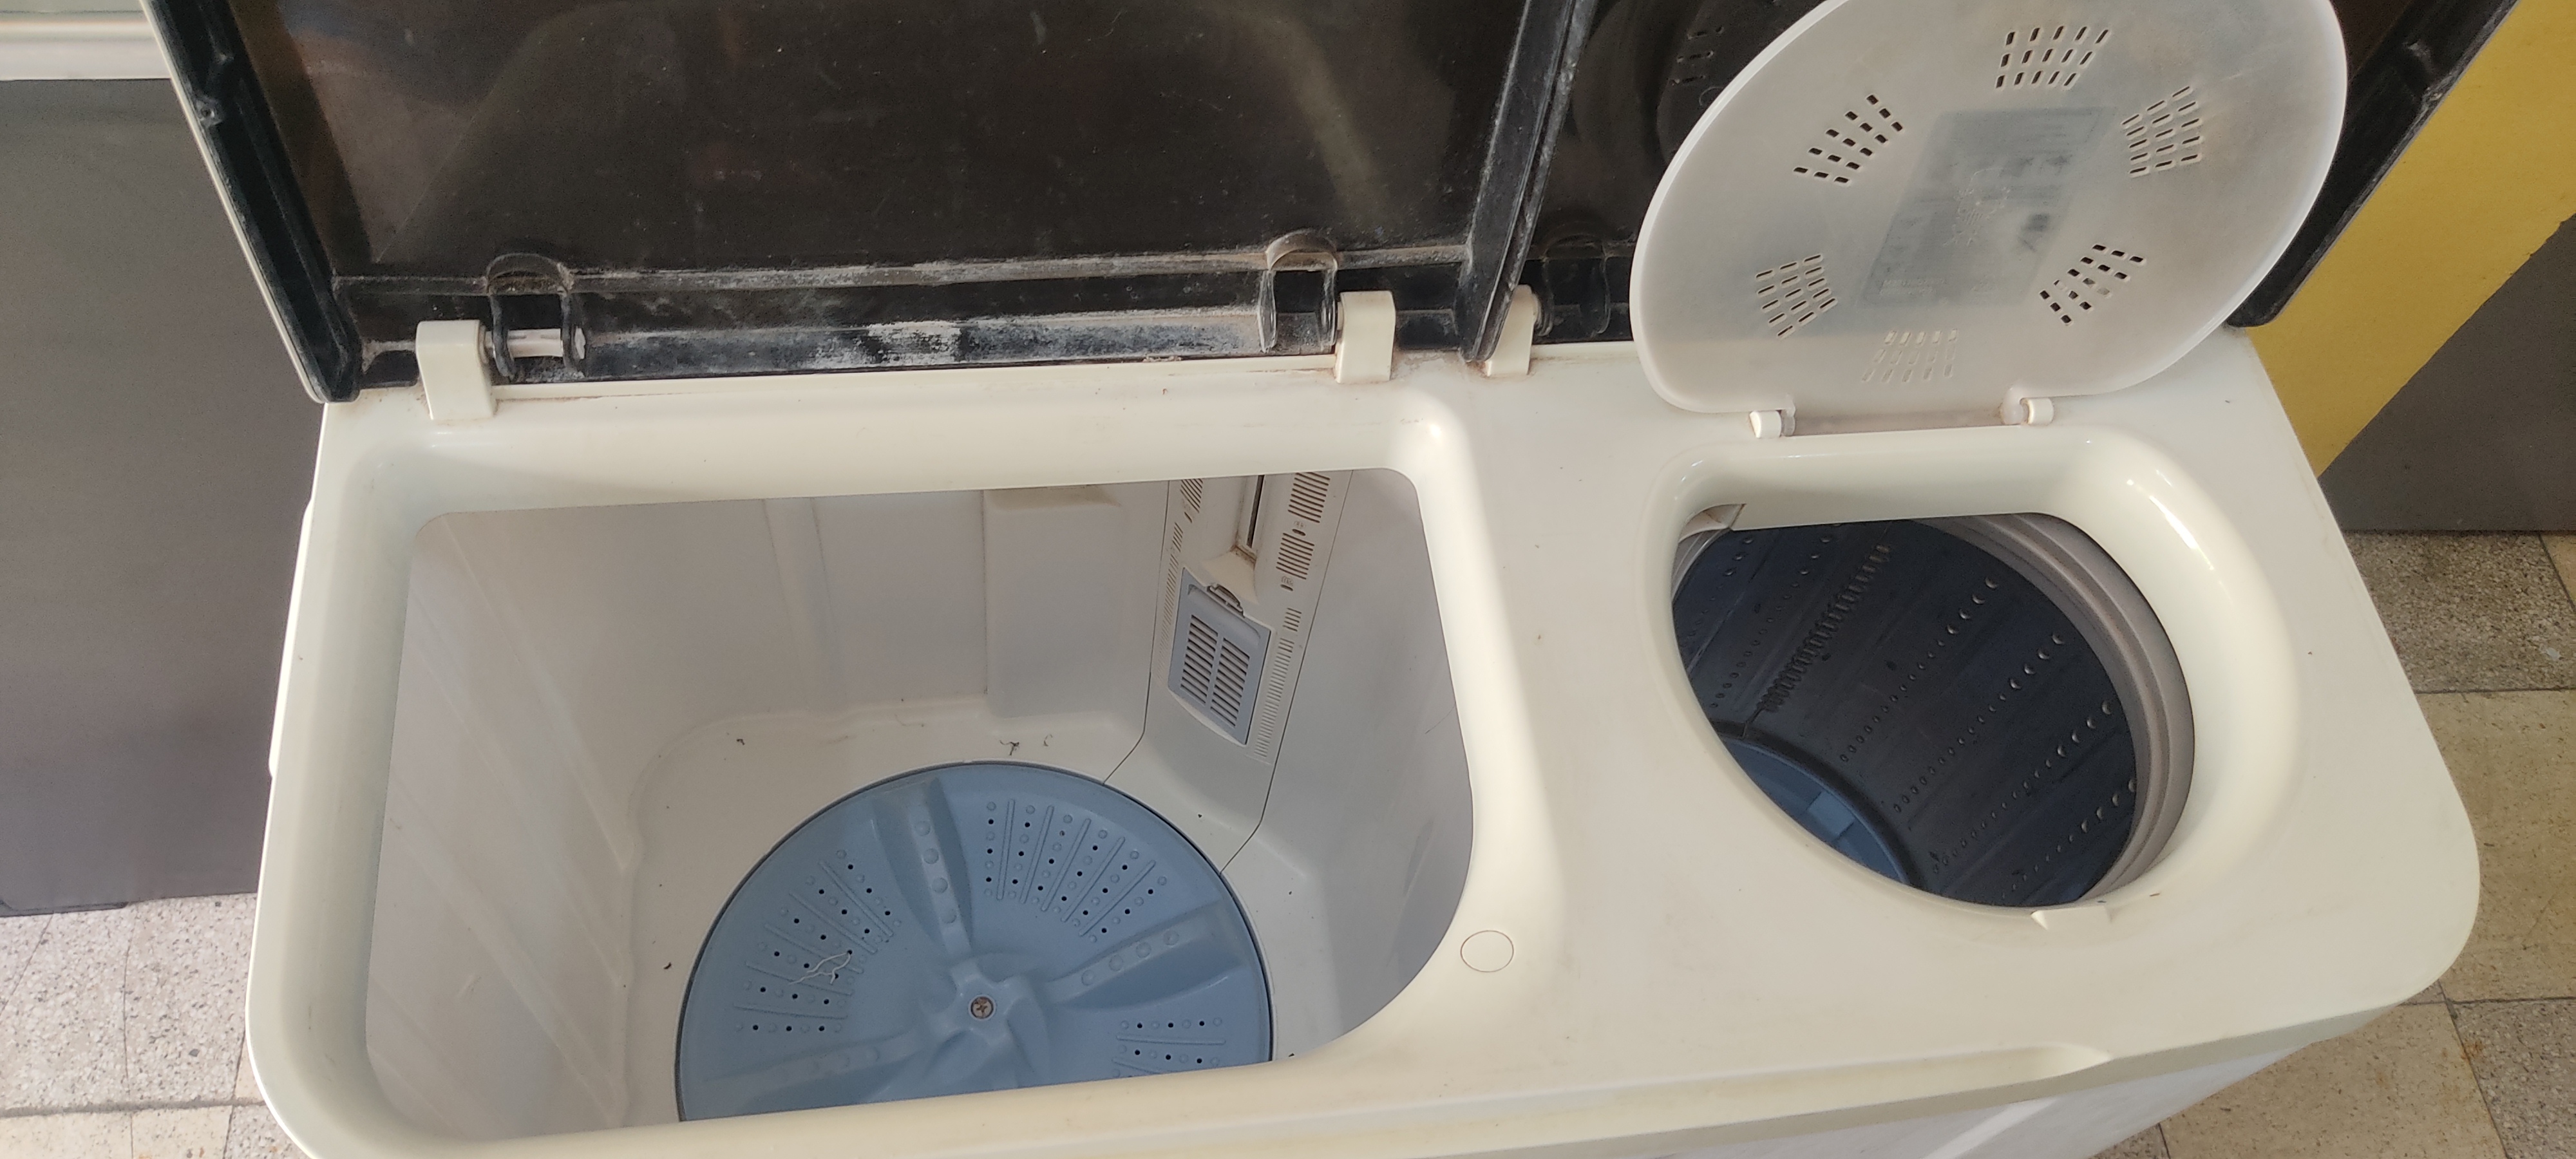 electrodomesticos - lavadora cetron 13 kilos 1